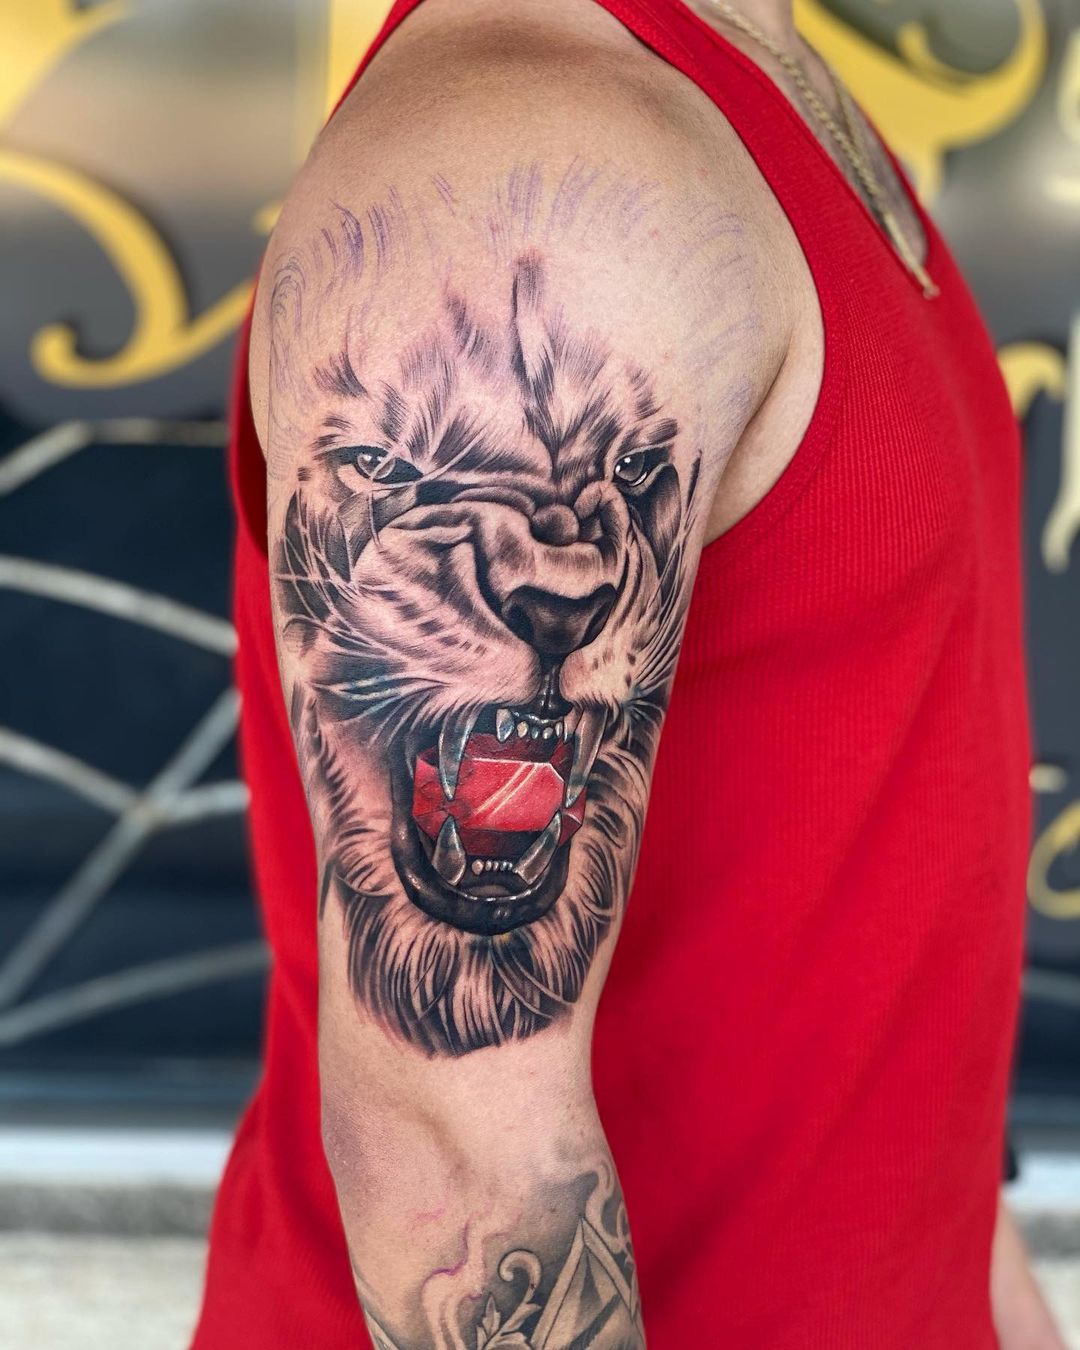 A lion roar is a powerful tattoo.